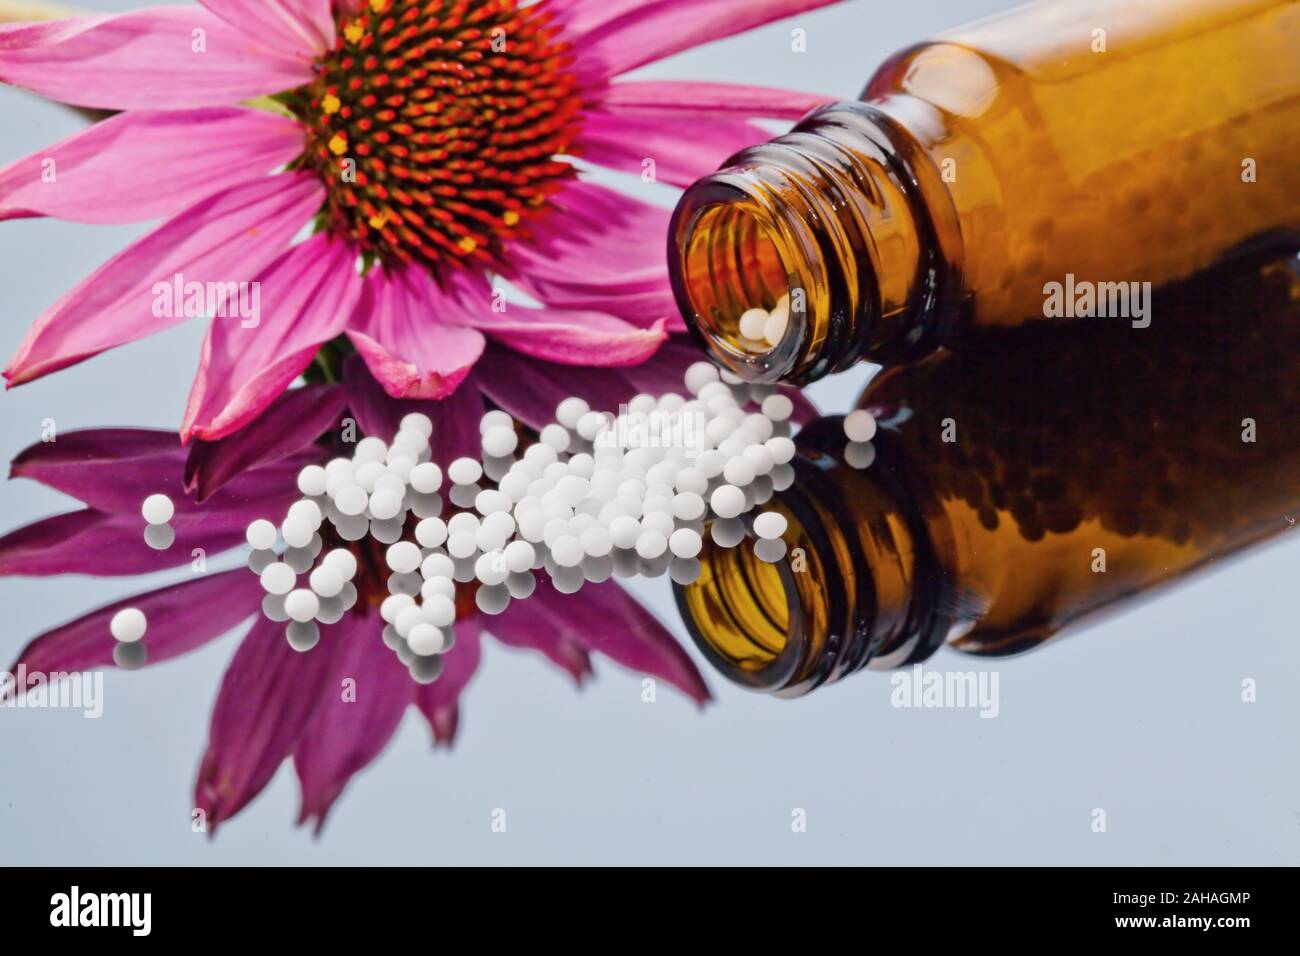 Ovuli zur Behandlung von Krankheiten in der sanften, alternativen Medizin. Tabletten und Medikamente. Foto Stock